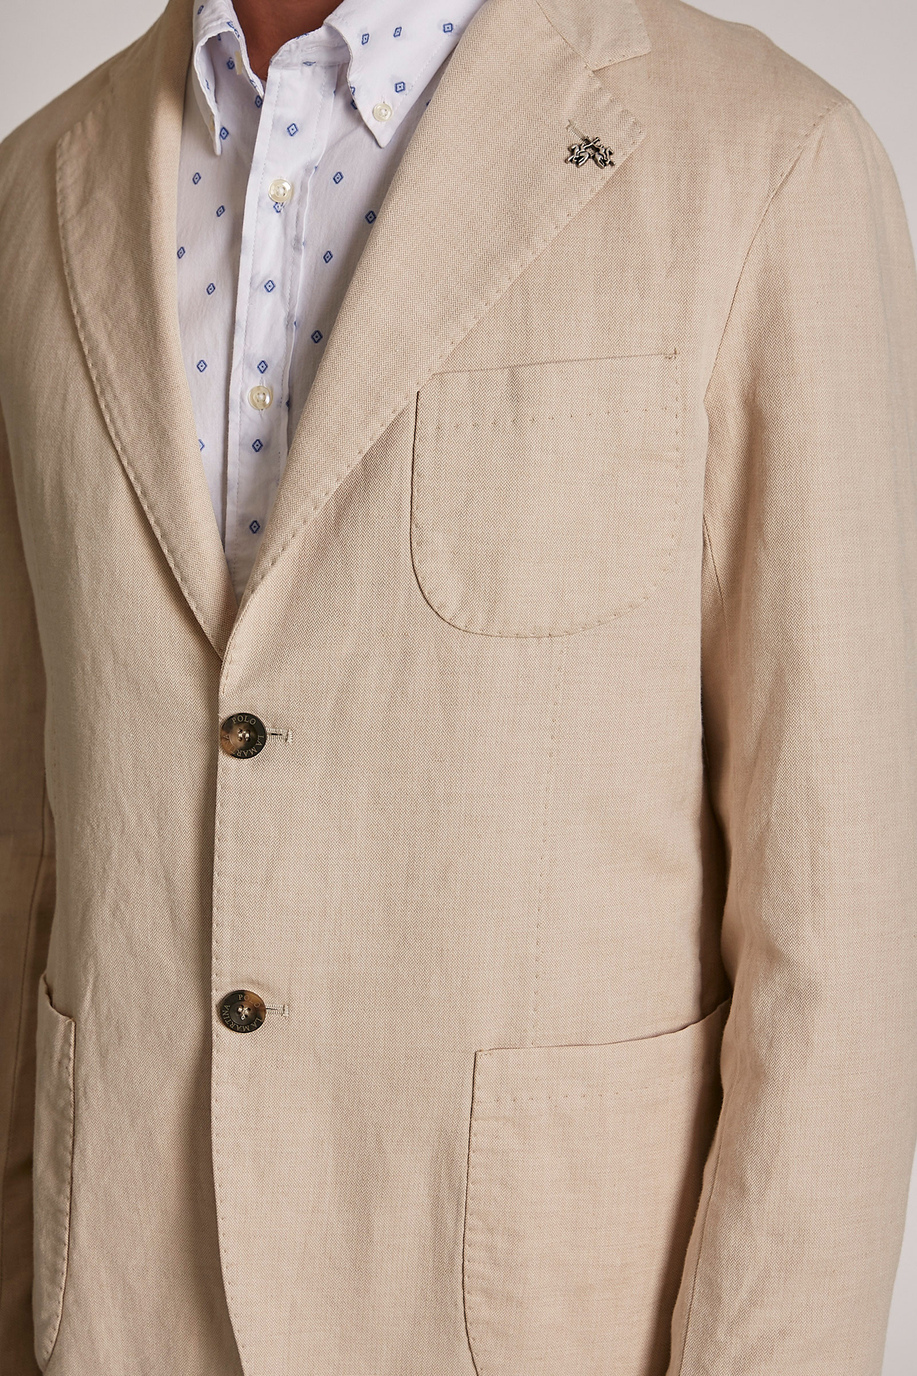 Chaqueta de hombre de mezcla de algodón y lino, modelo blazer, corte regular